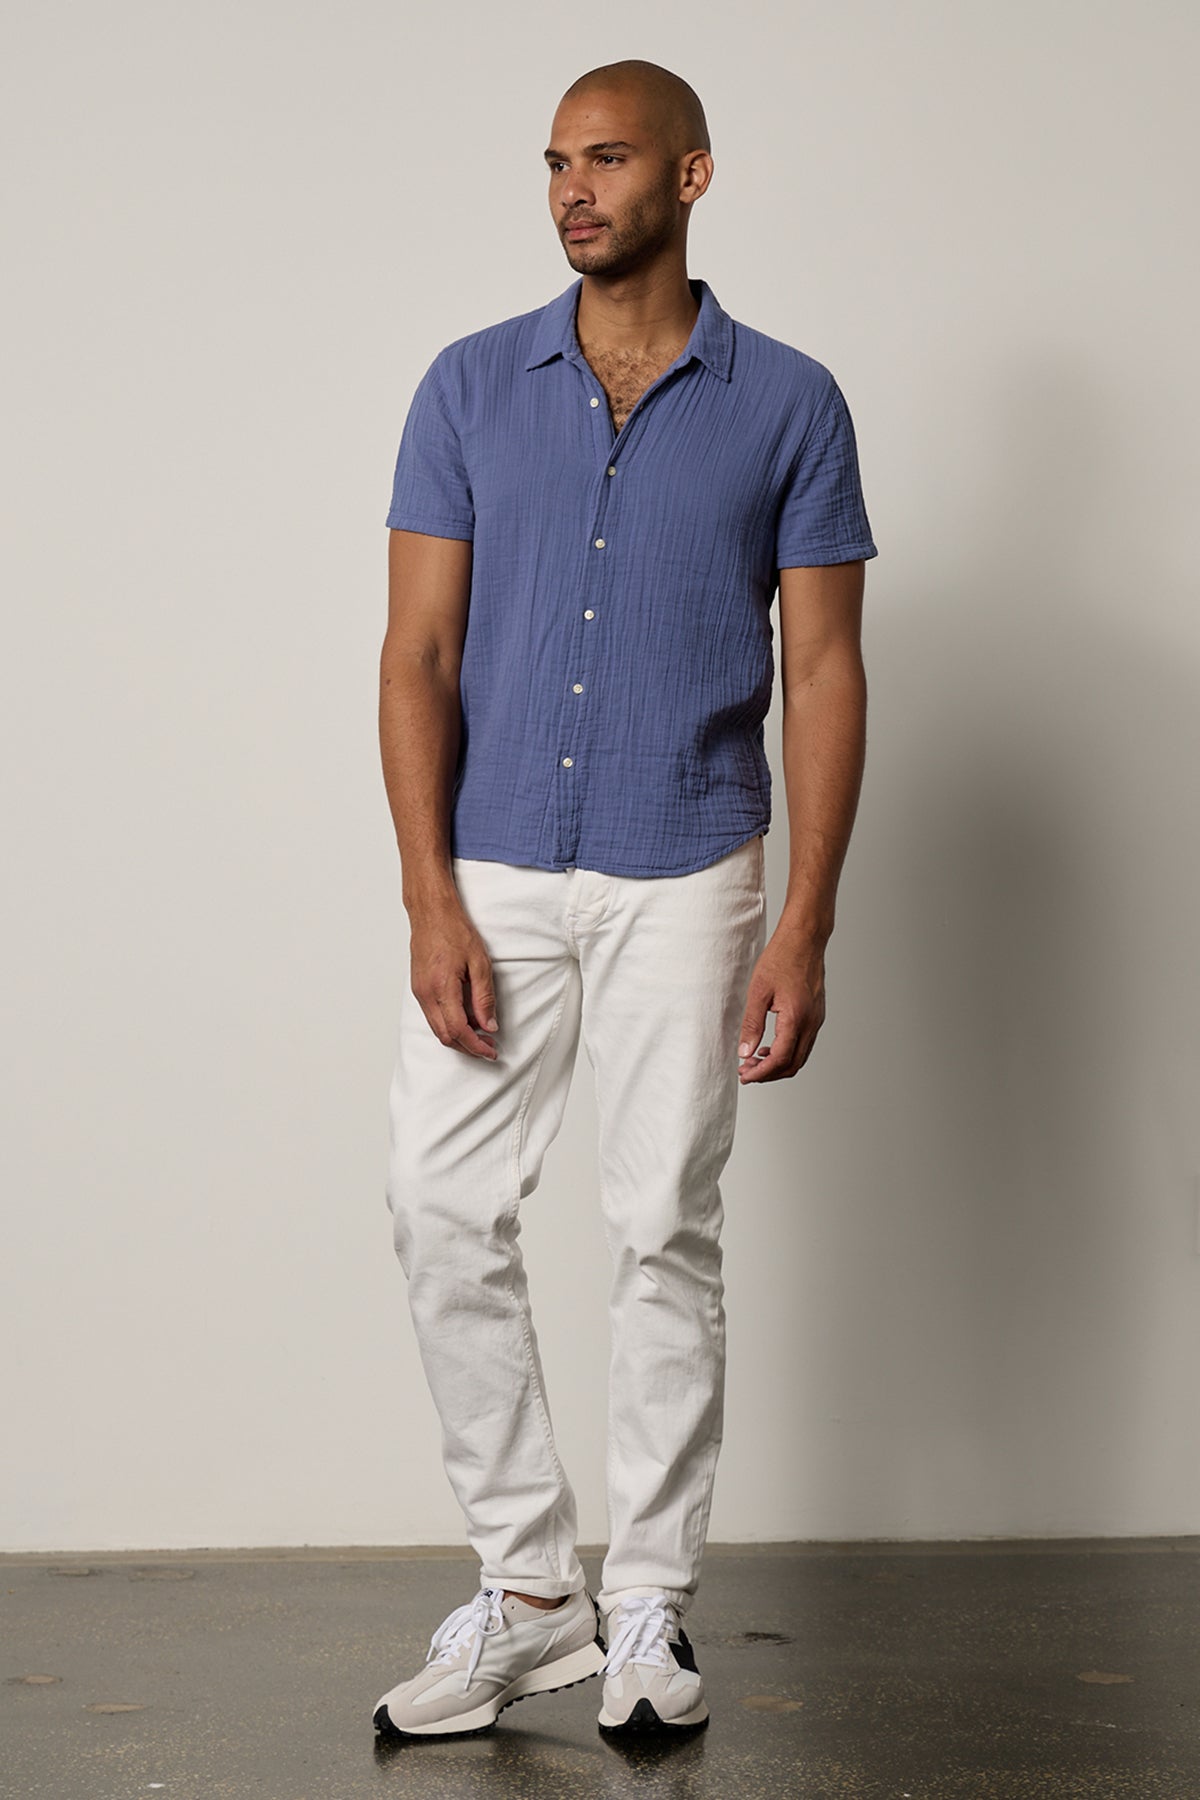 Christian Shirt in citadel blue with white denim full length front-26266328465601